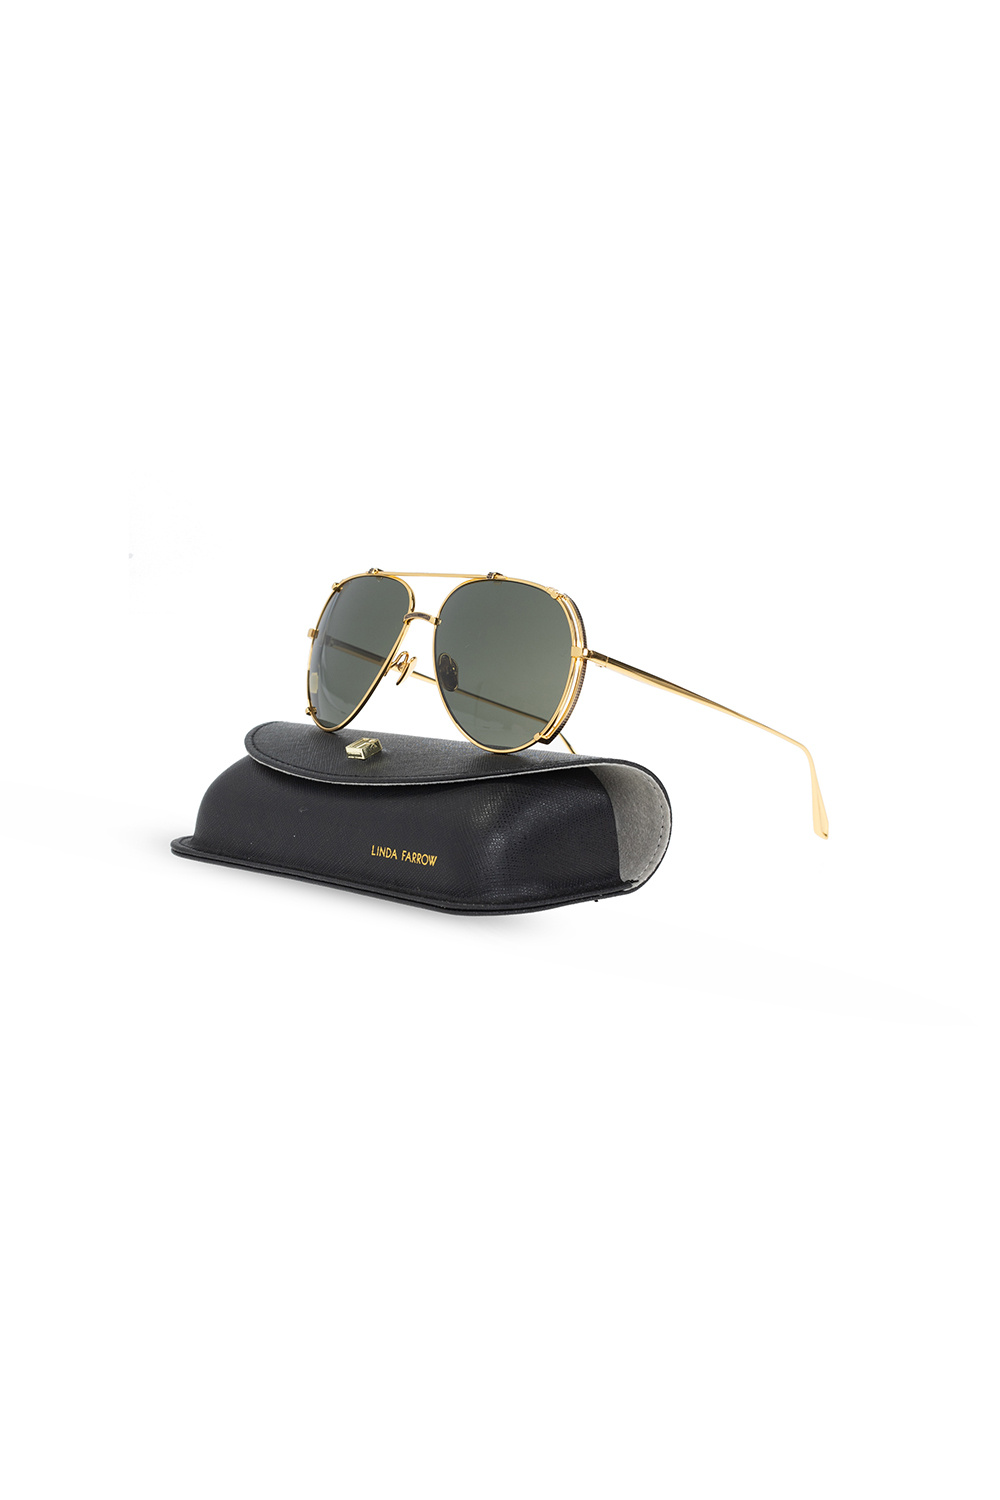 Linda Farrow ‘Newman’ sunglasses